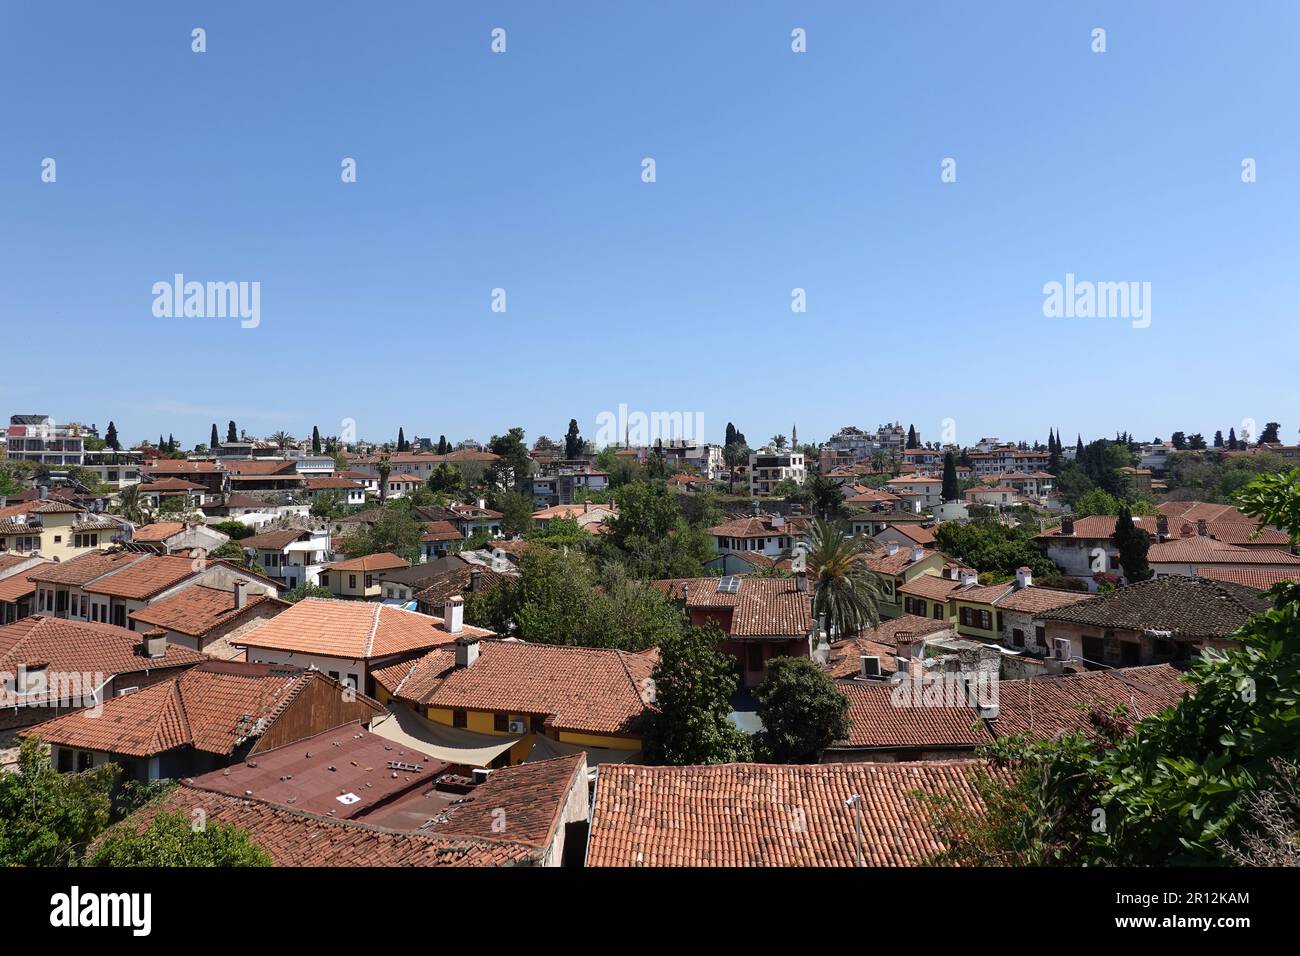 Vue sur les toits de tuiles des maisons de la vieille ville d'Antalya depuis la terrasse d'observation par une journée ensoleillée Banque D'Images